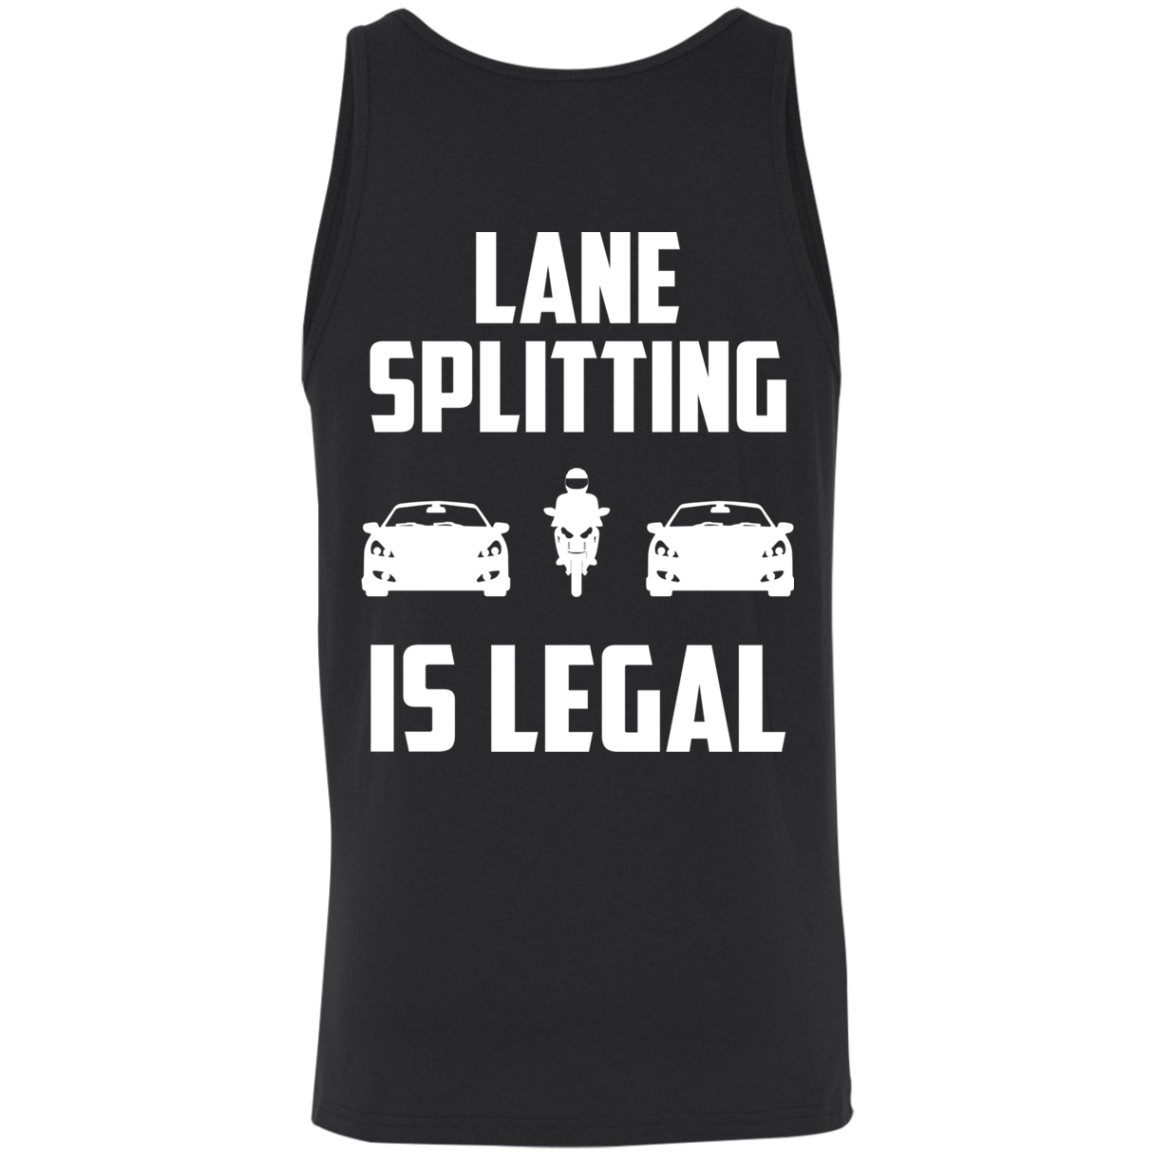 Lane Splitting Is Legal Tank Top Black X-Small S M L XL 2XL